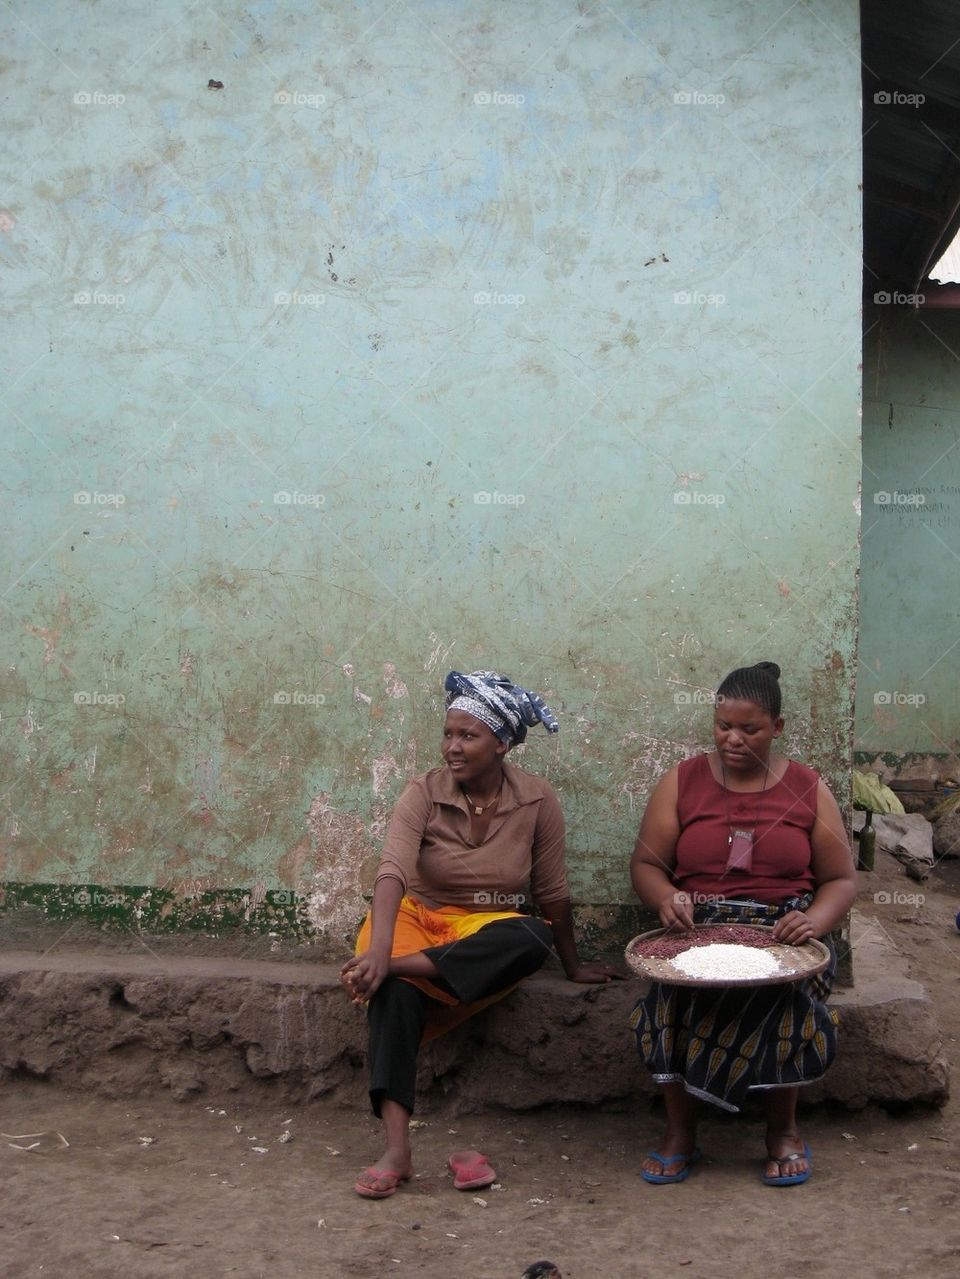 Village women in Africa